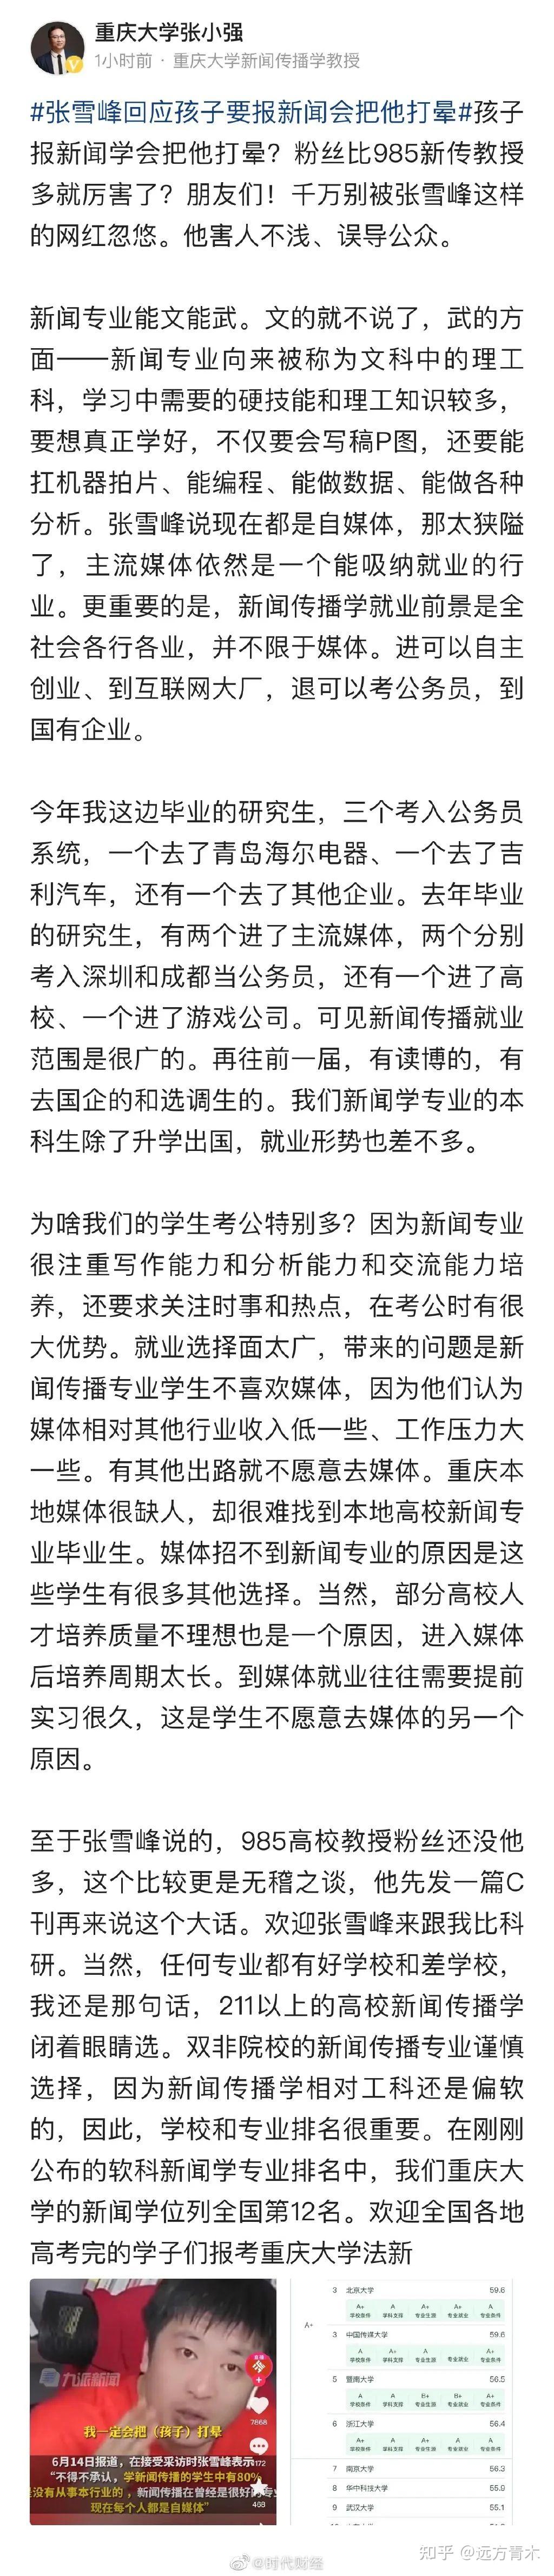 张雪峰与人民日报的“爱恨情仇” - 知乎